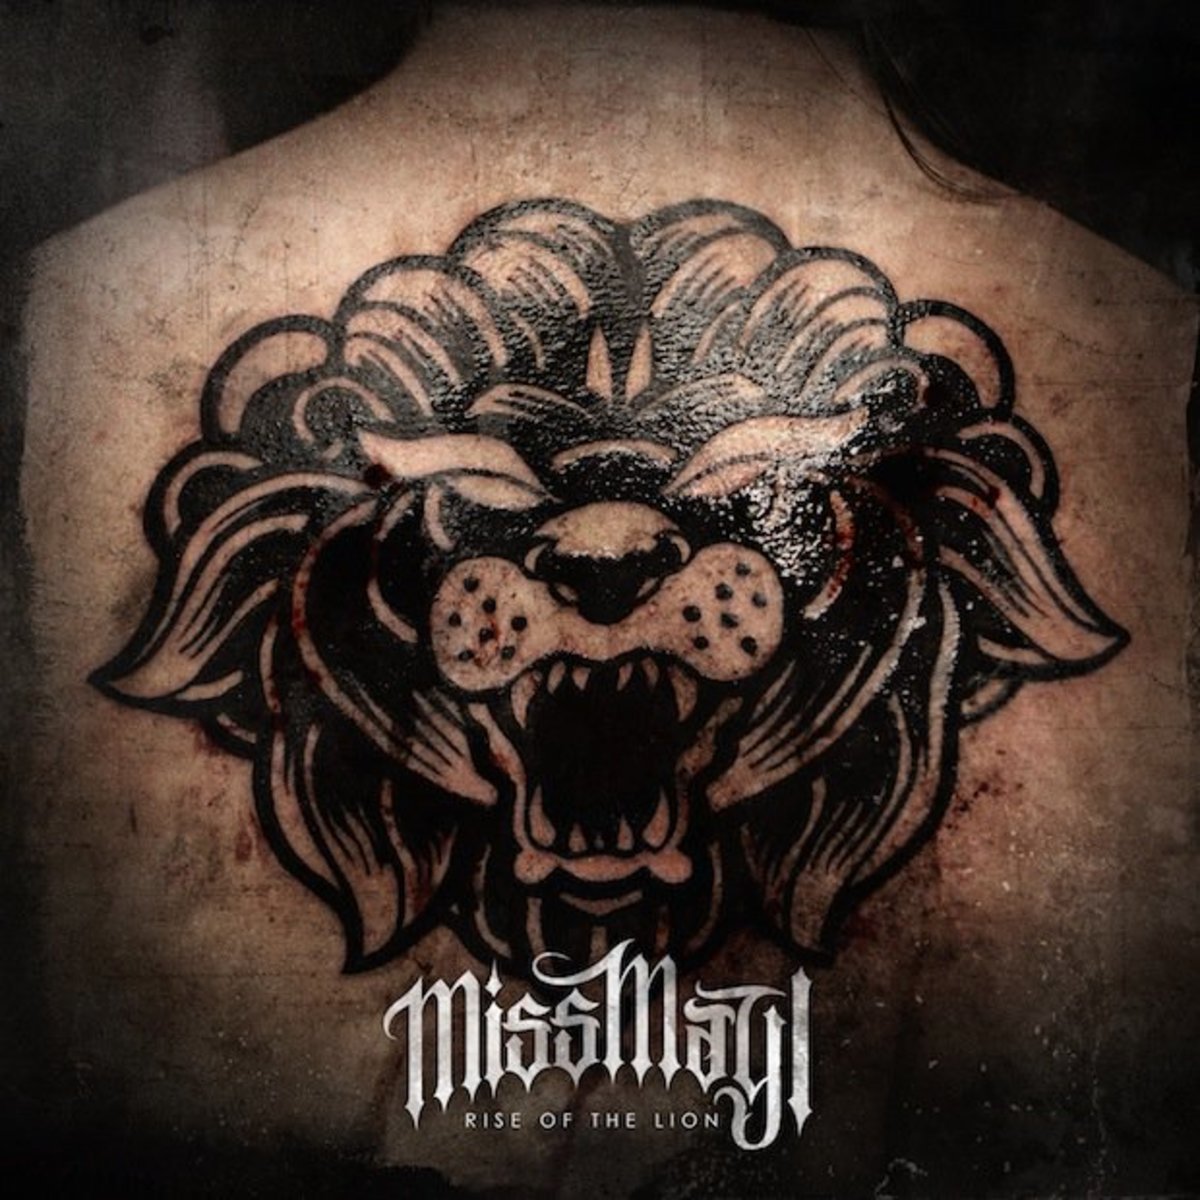 Rise of the Lion Cover Art. Tattoo av London Reese